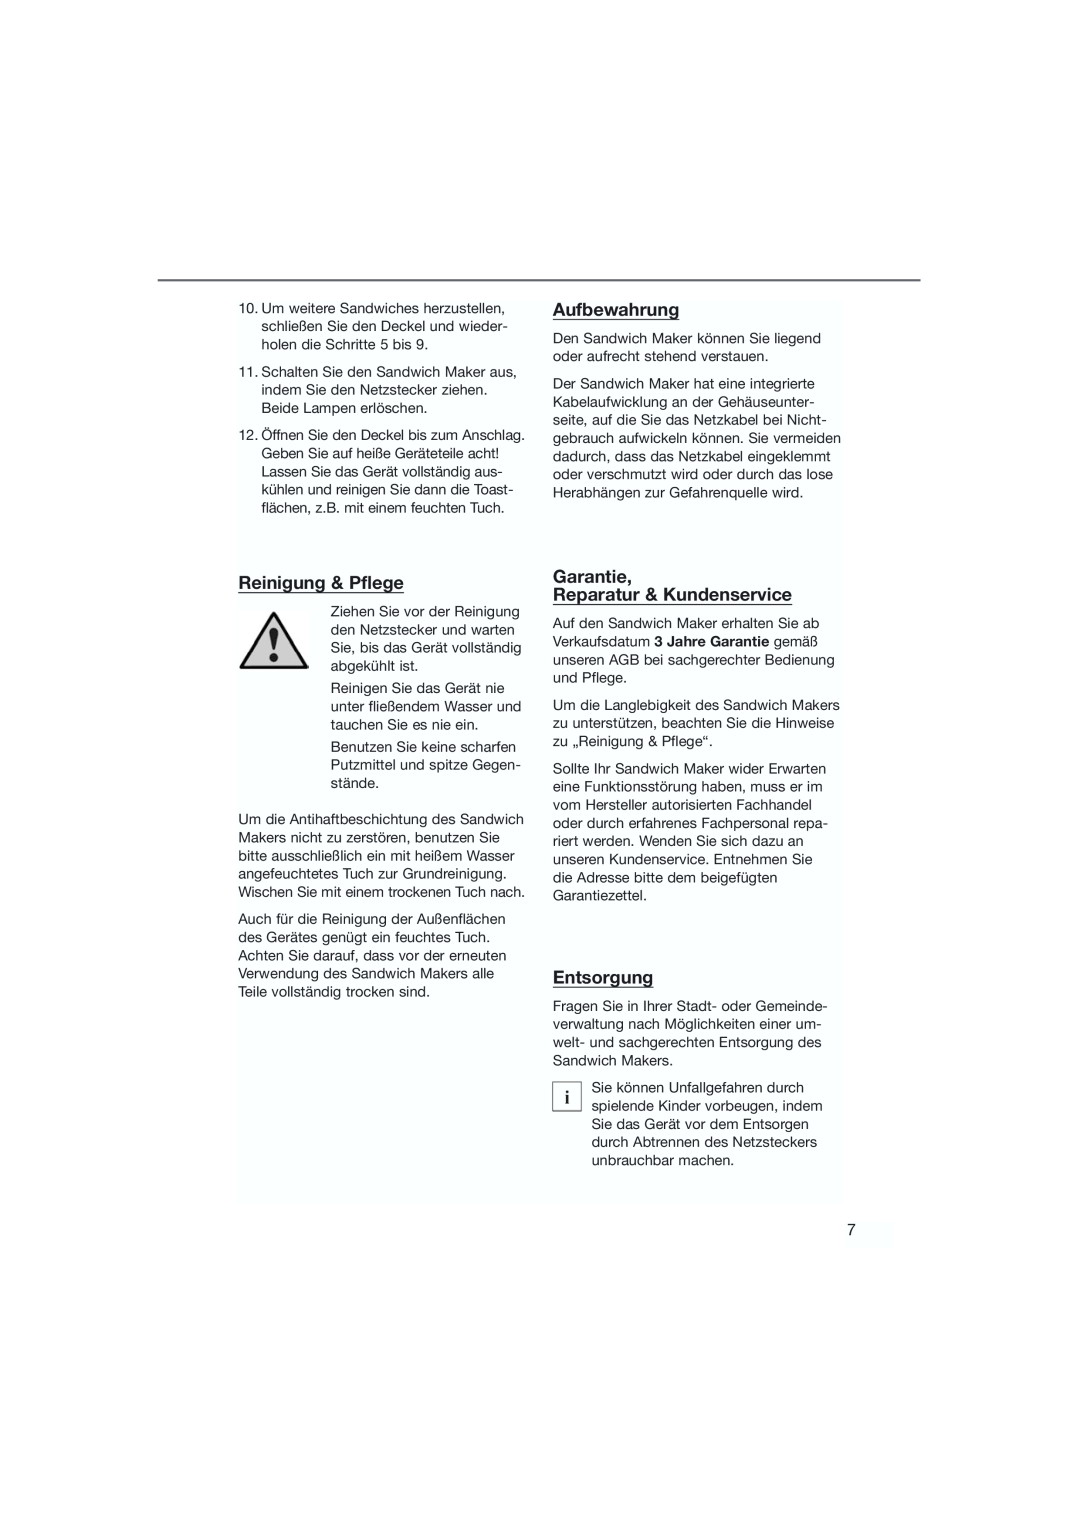 Bifinett KH 1120 manual Aufbewahrung, Reinigung & Pflege, Garantie Reparatur & Kundenservice, Entsorgung 